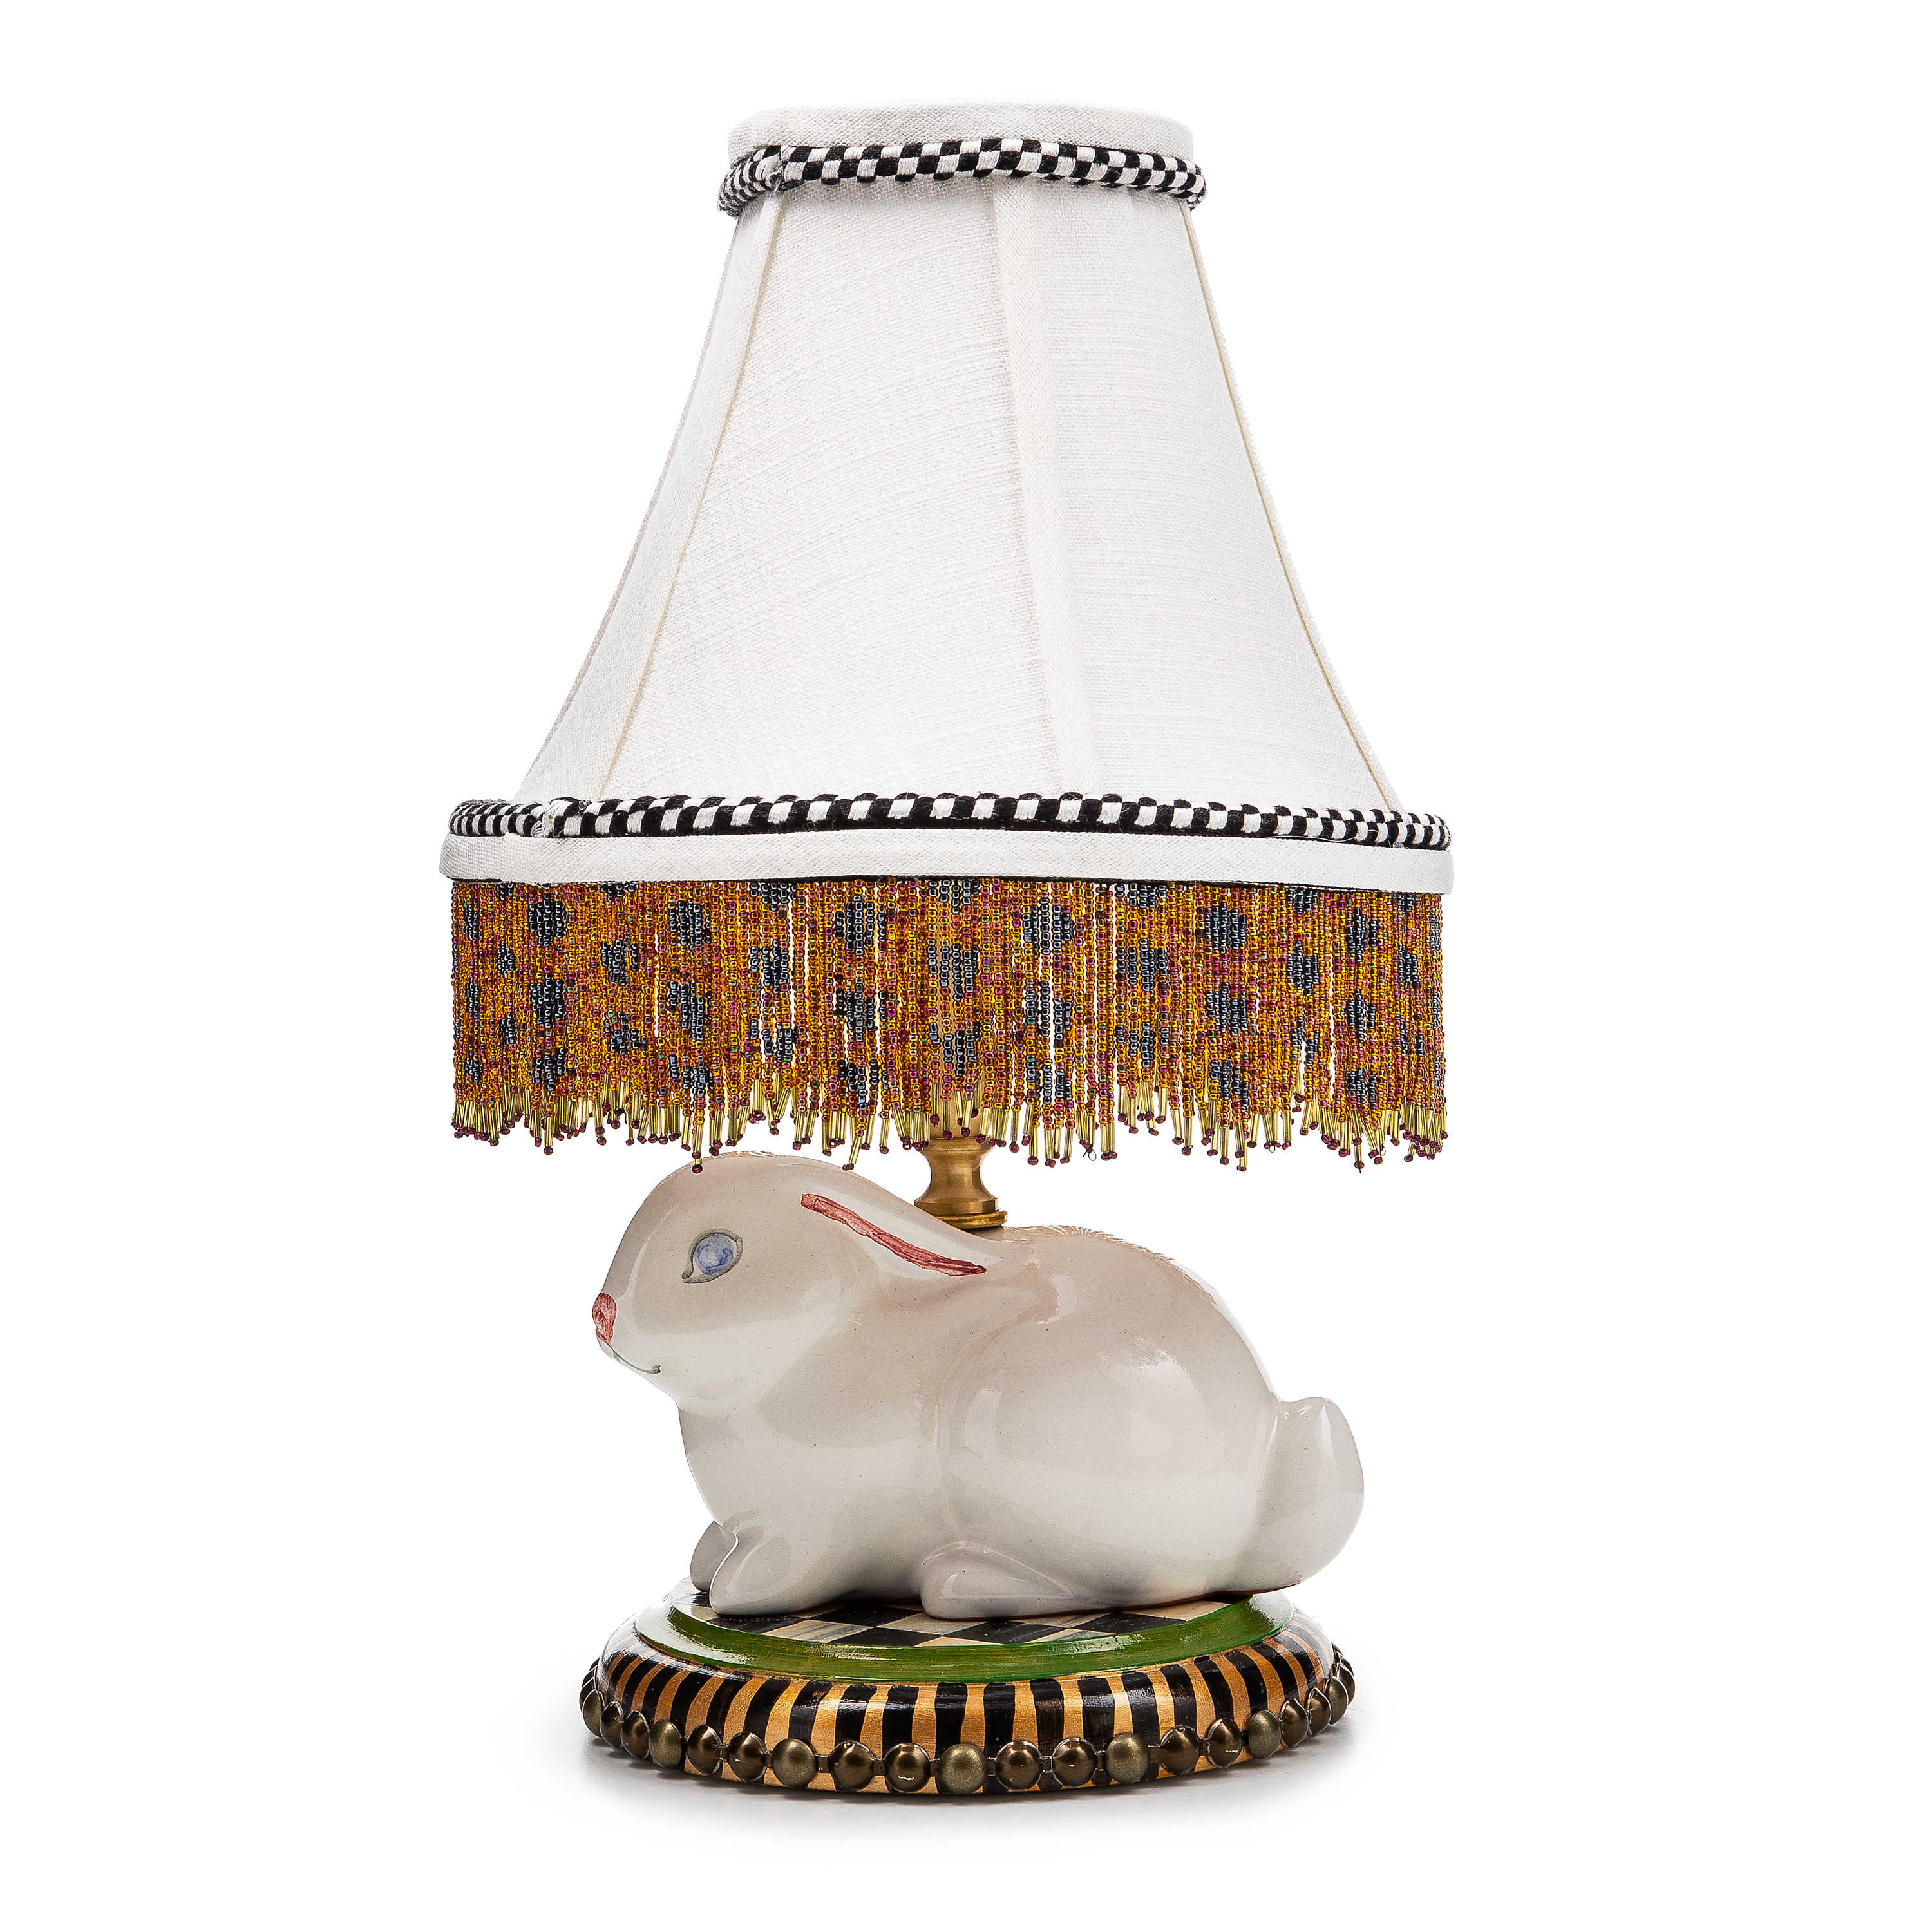 Rabbit Warren Ceramic Table Lamp mackenzie-childs Panama 0